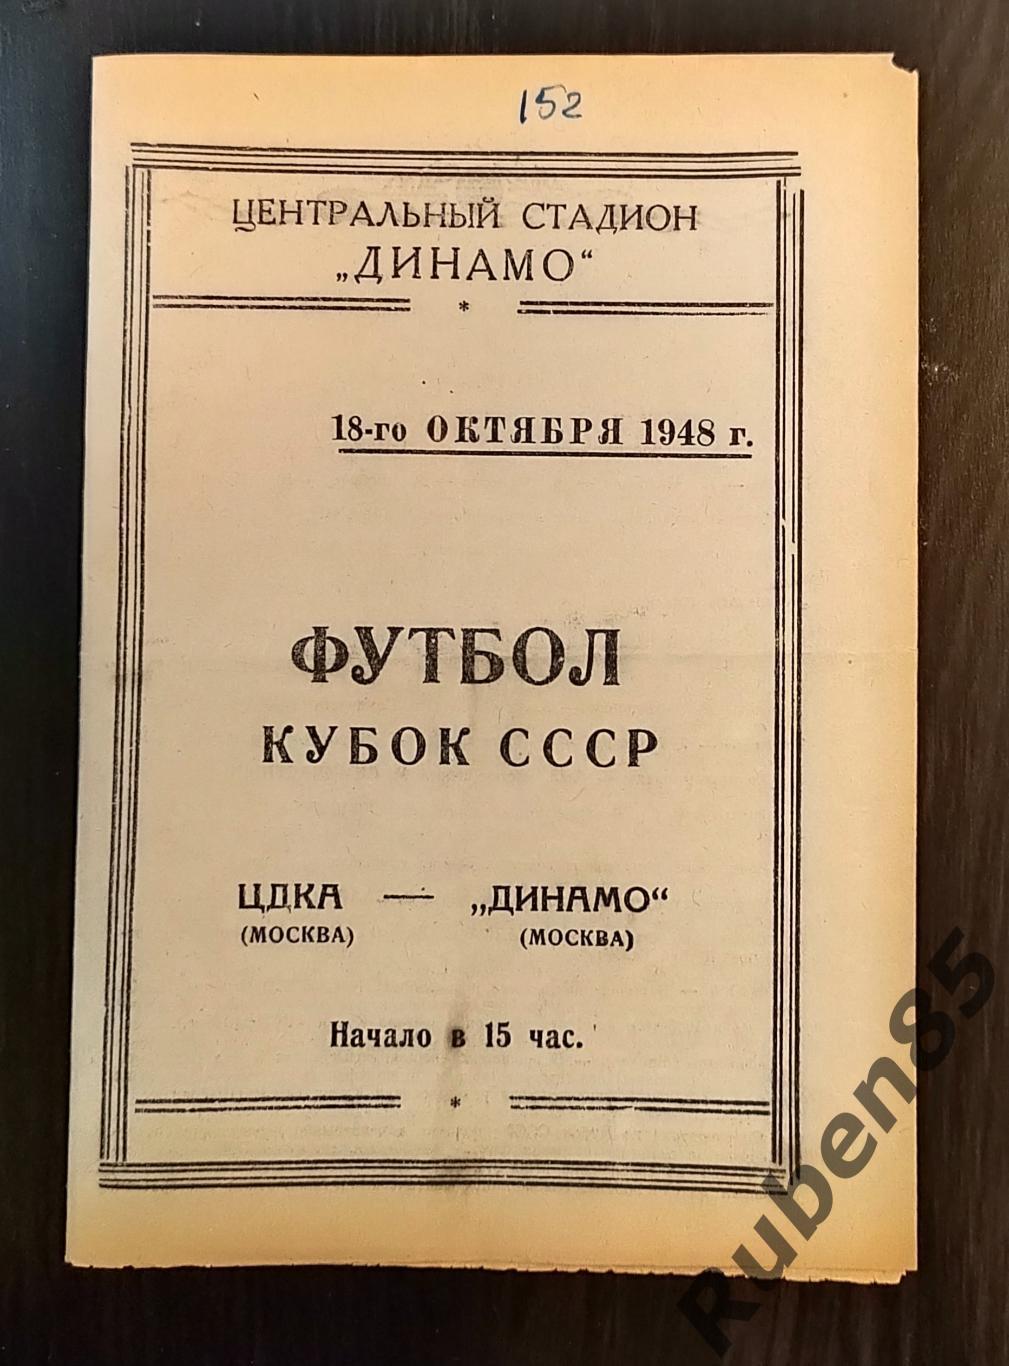 Программа Динамо Москва - ЦДКА 18.10 1948 ПЕРЕИГРОВКА кубок ЦСКА